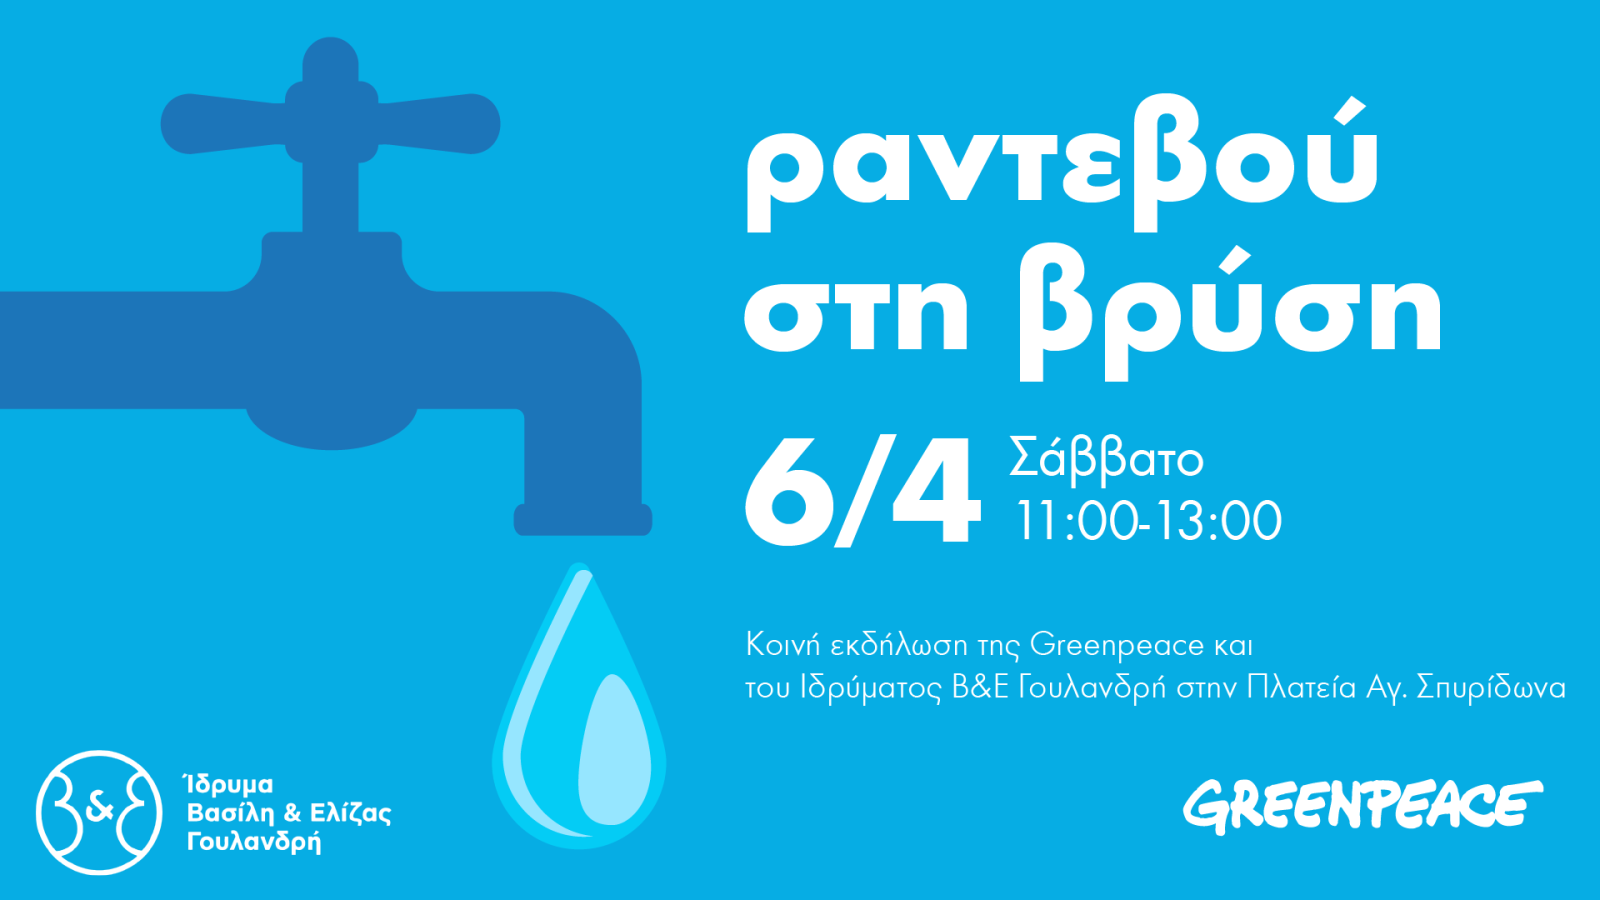 “Ραντεβού στη βρύση”, κοινή εκδήλωση της Greenpeace και του Ιδρύματος Βασίλη & Ελίζας Γουλανδρή (6/04)